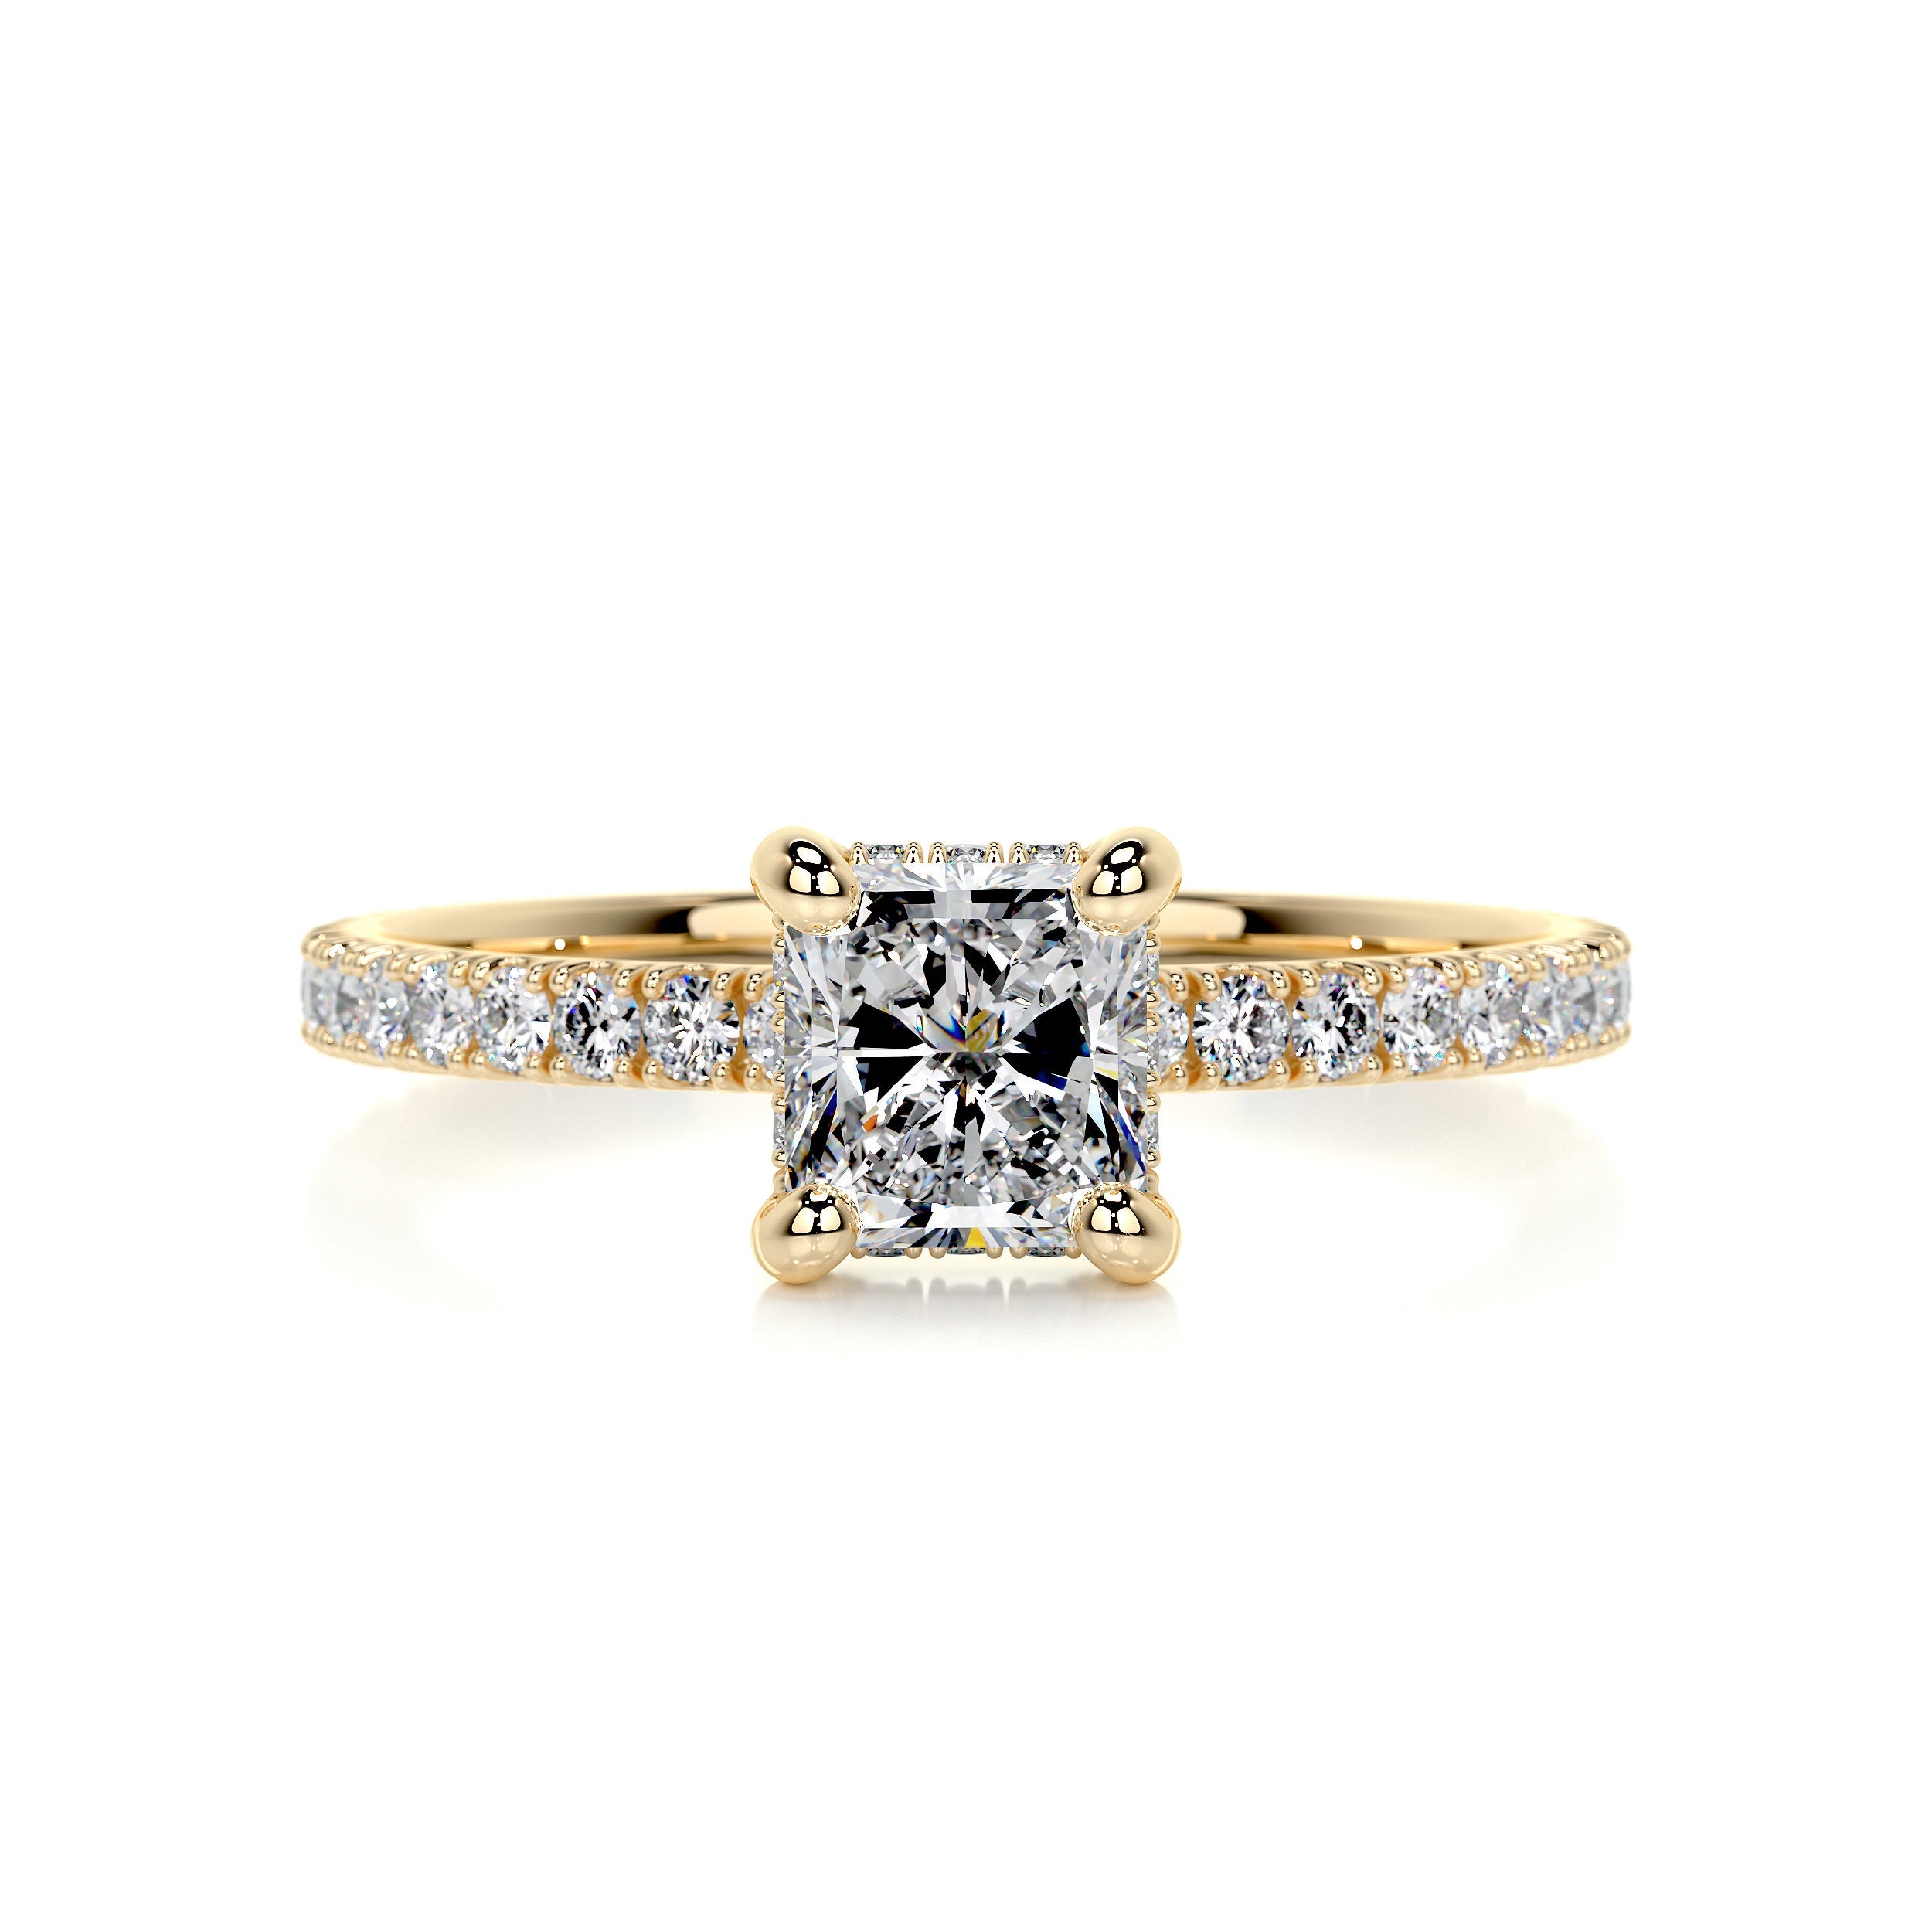 Deborah Moissanite & Diamonds Ring -18K Yellow Gold